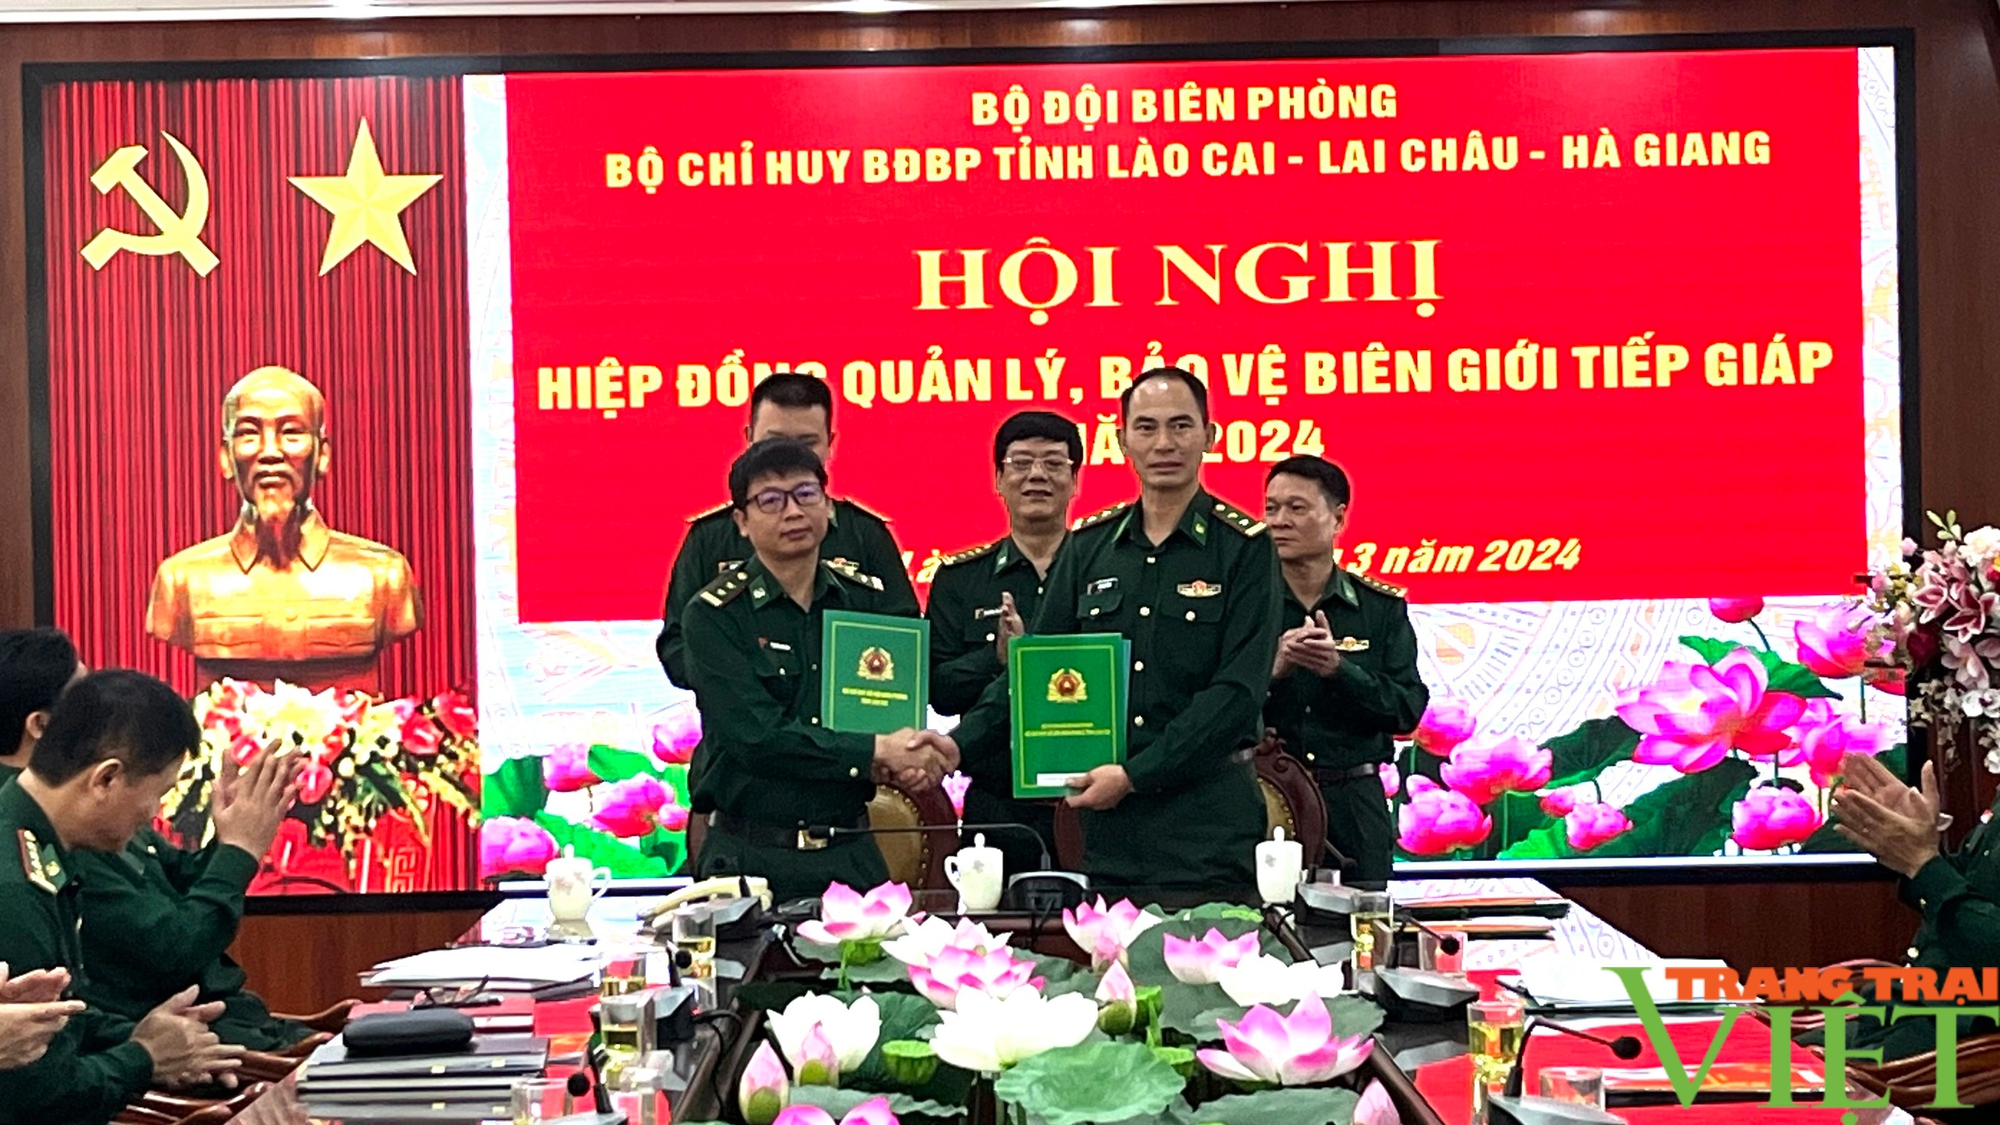 Bộ đội Biên phòng tỉnh Lai Châu, Lào Cai, Hà Giang hiệp đồng bảo vệ biên giới tiếp giáp- Ảnh 2.